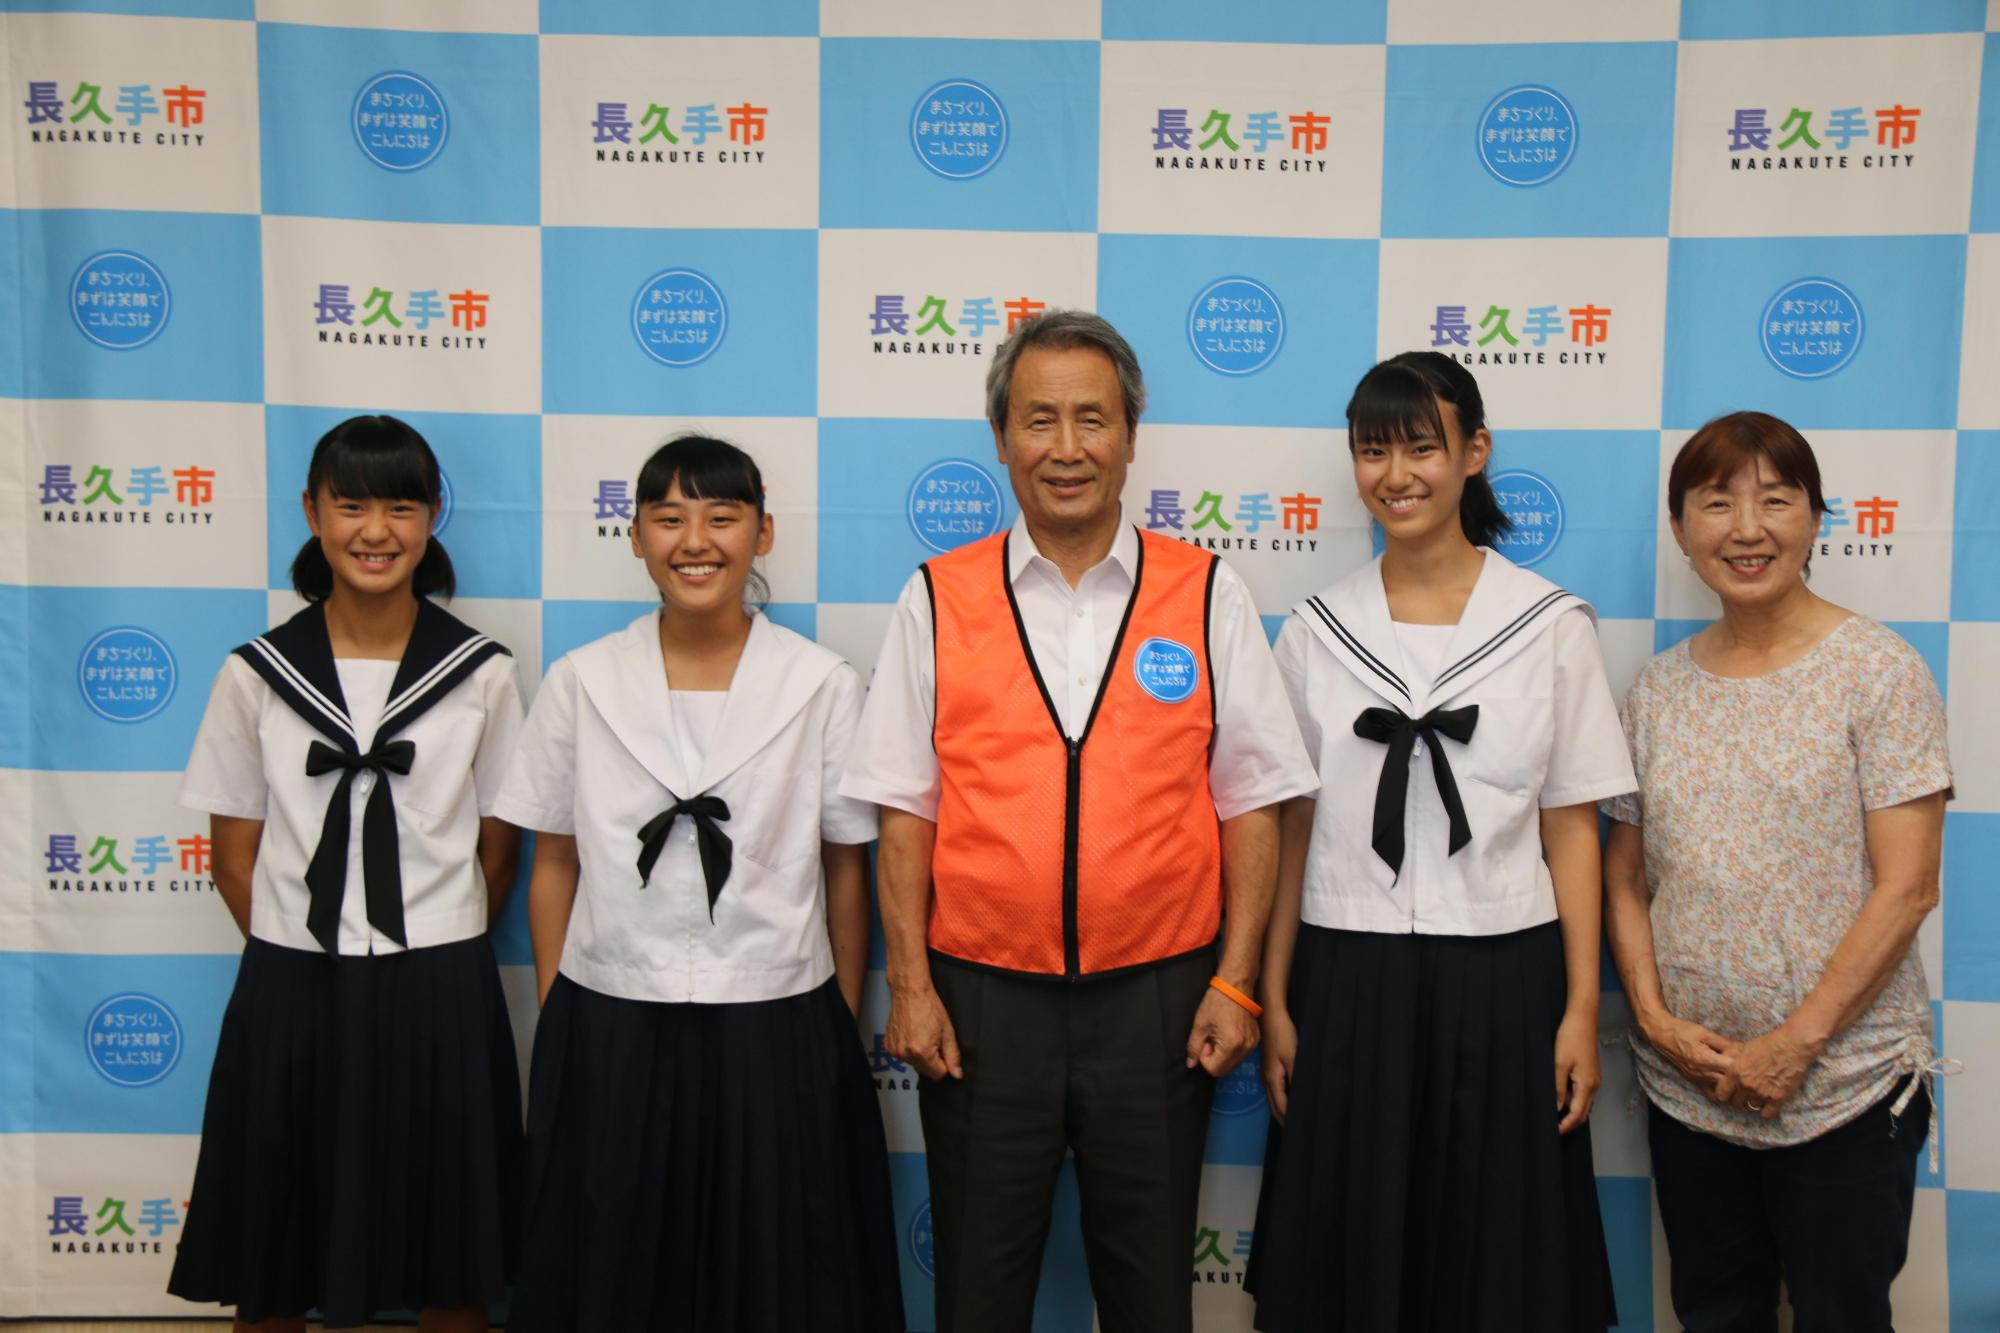 市長が真ん中で女子生徒3名と長久手市平和事業推進委員の女性が並んで、笑顔で写っている写真